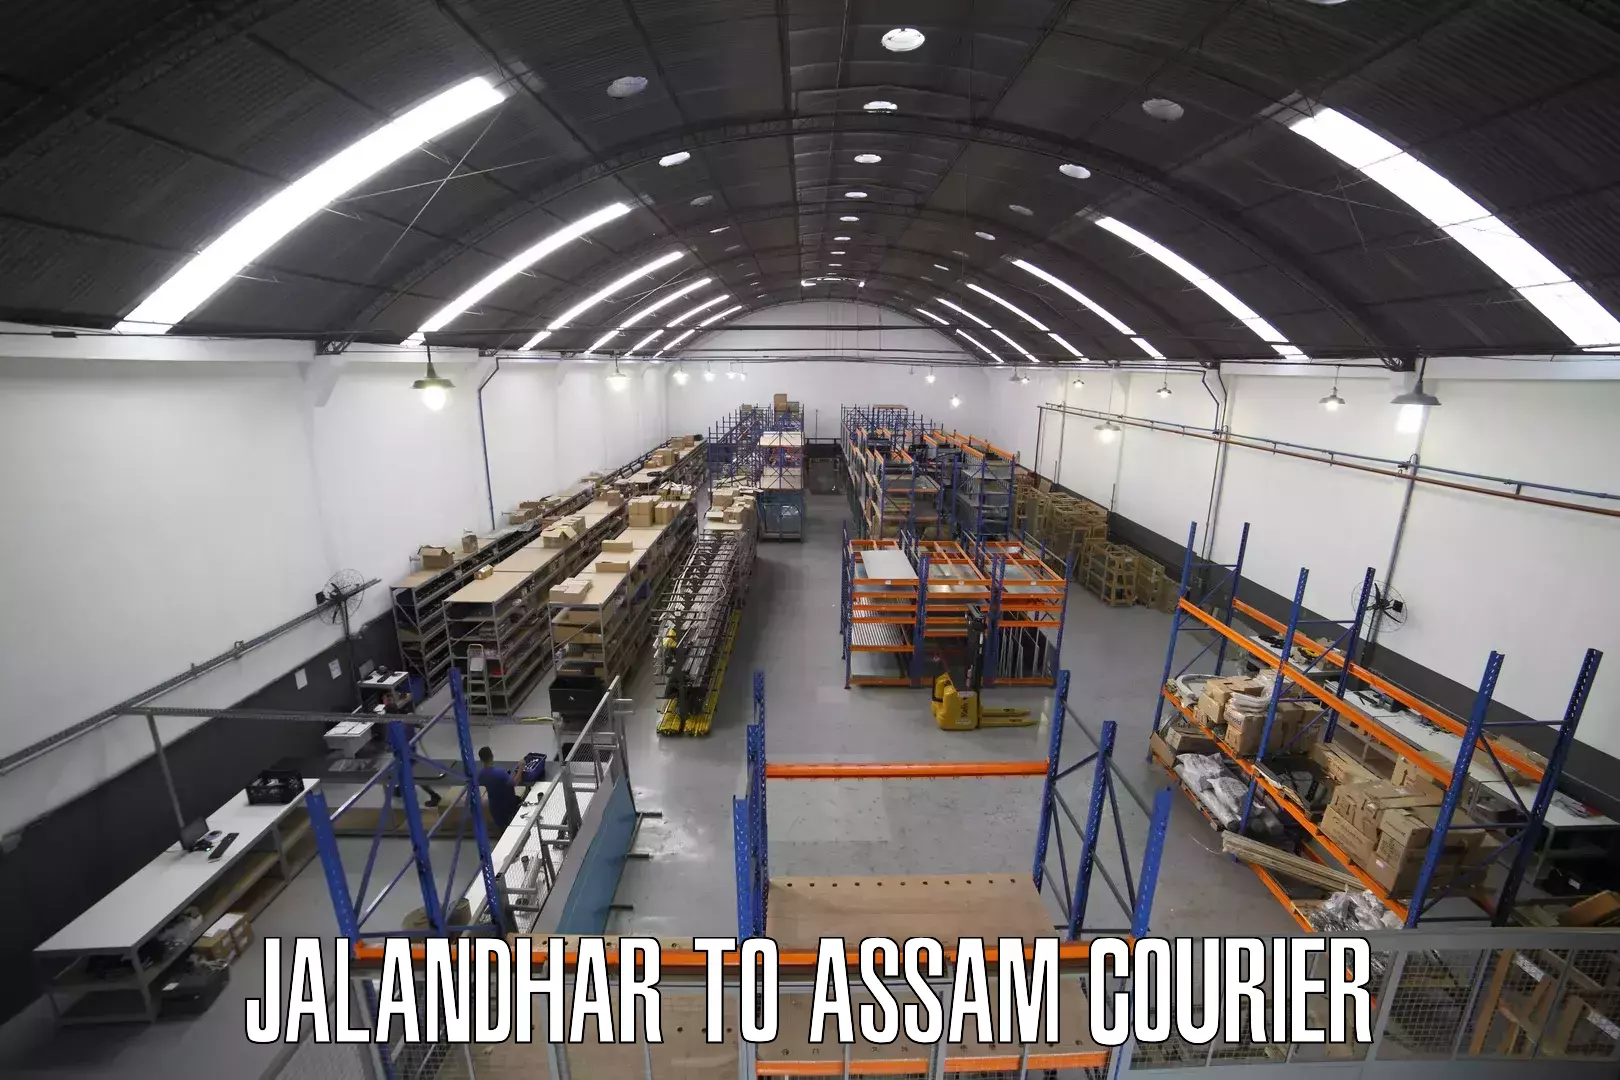 Global logistics network Jalandhar to Assam